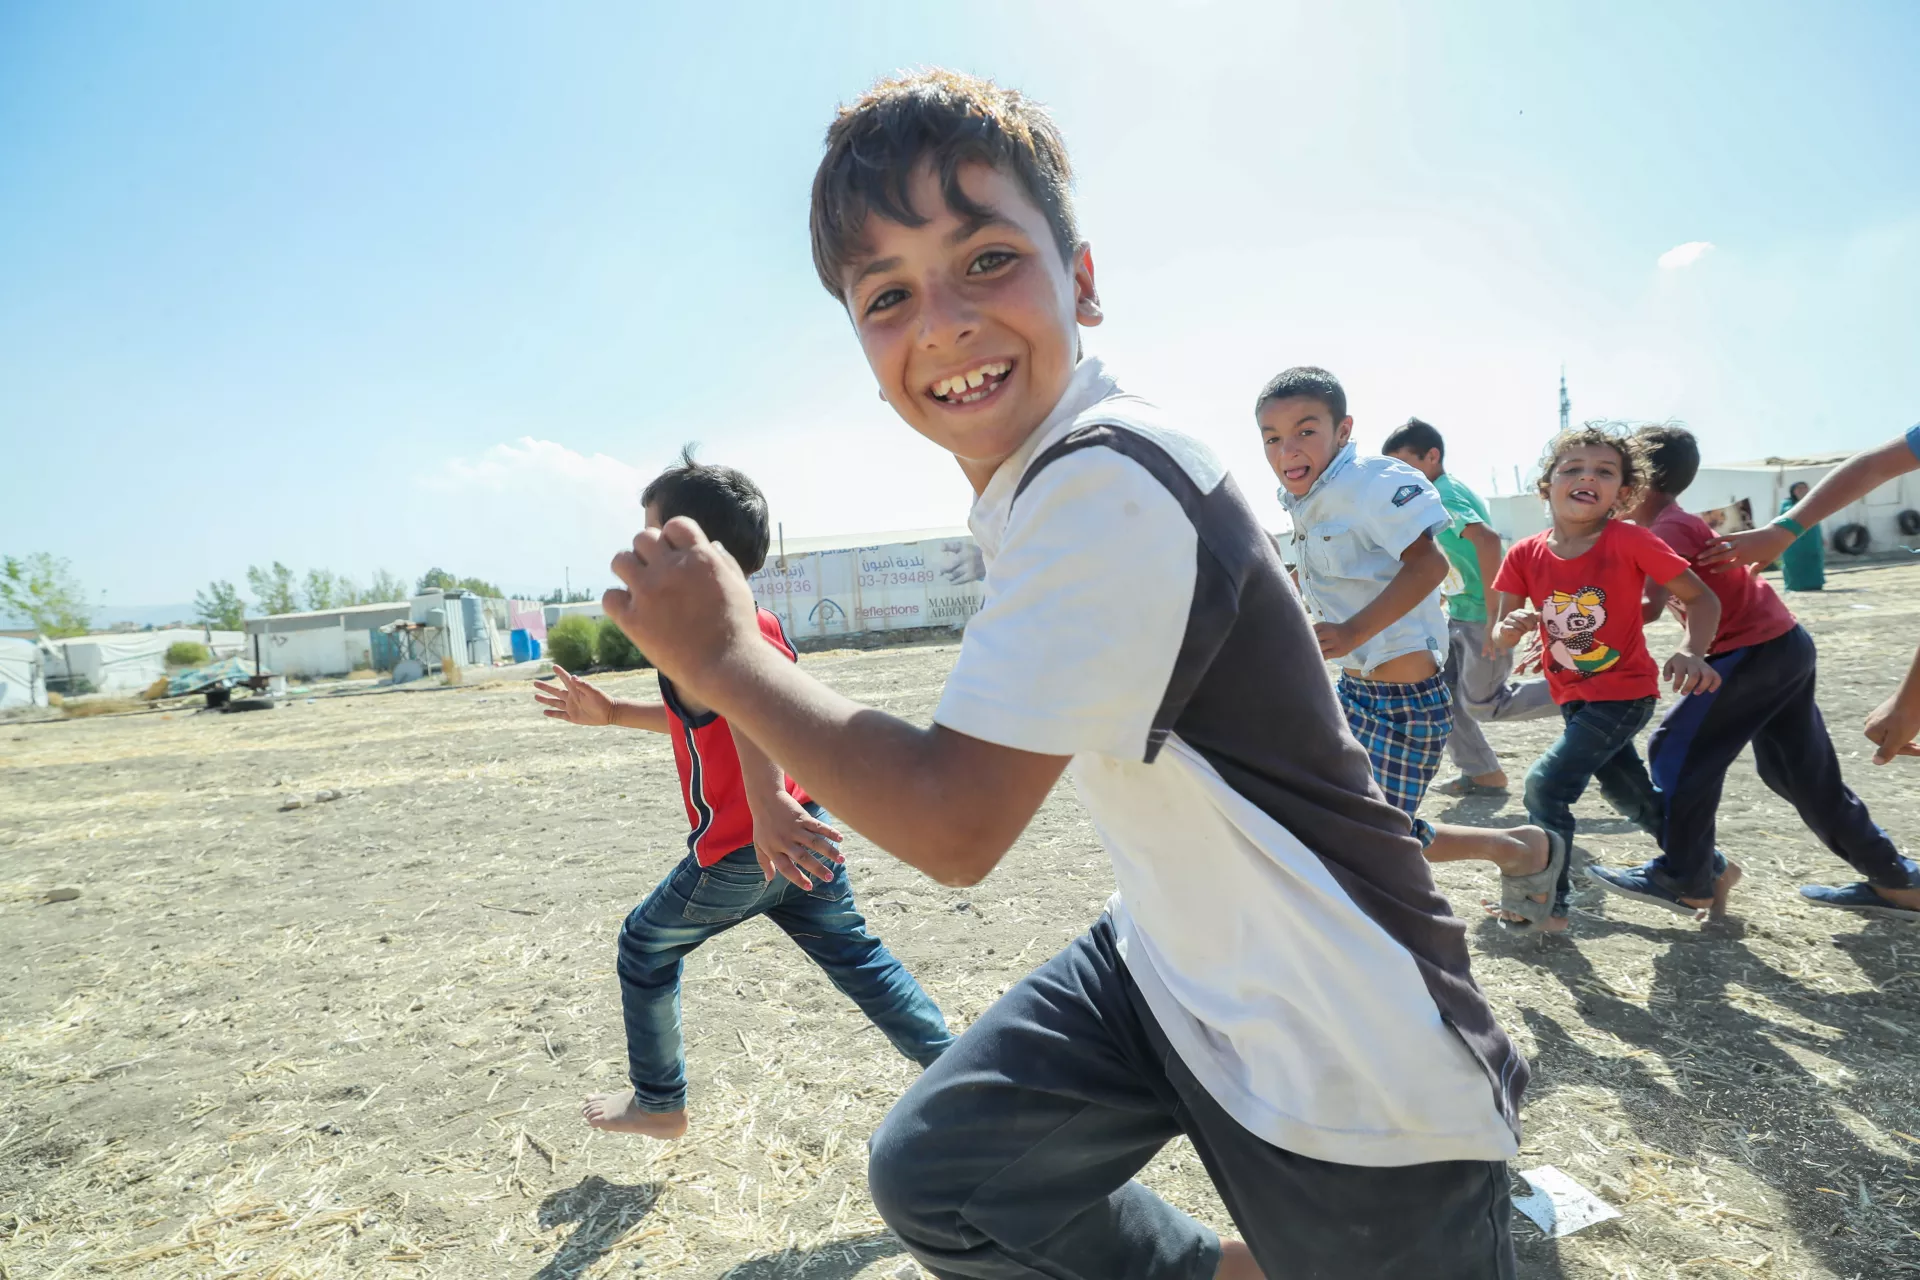 اتفاقية حقوق الطفل: أطفال سوريون لاجئون يلعبون معا في مخيم غير رسمي في لبنان.